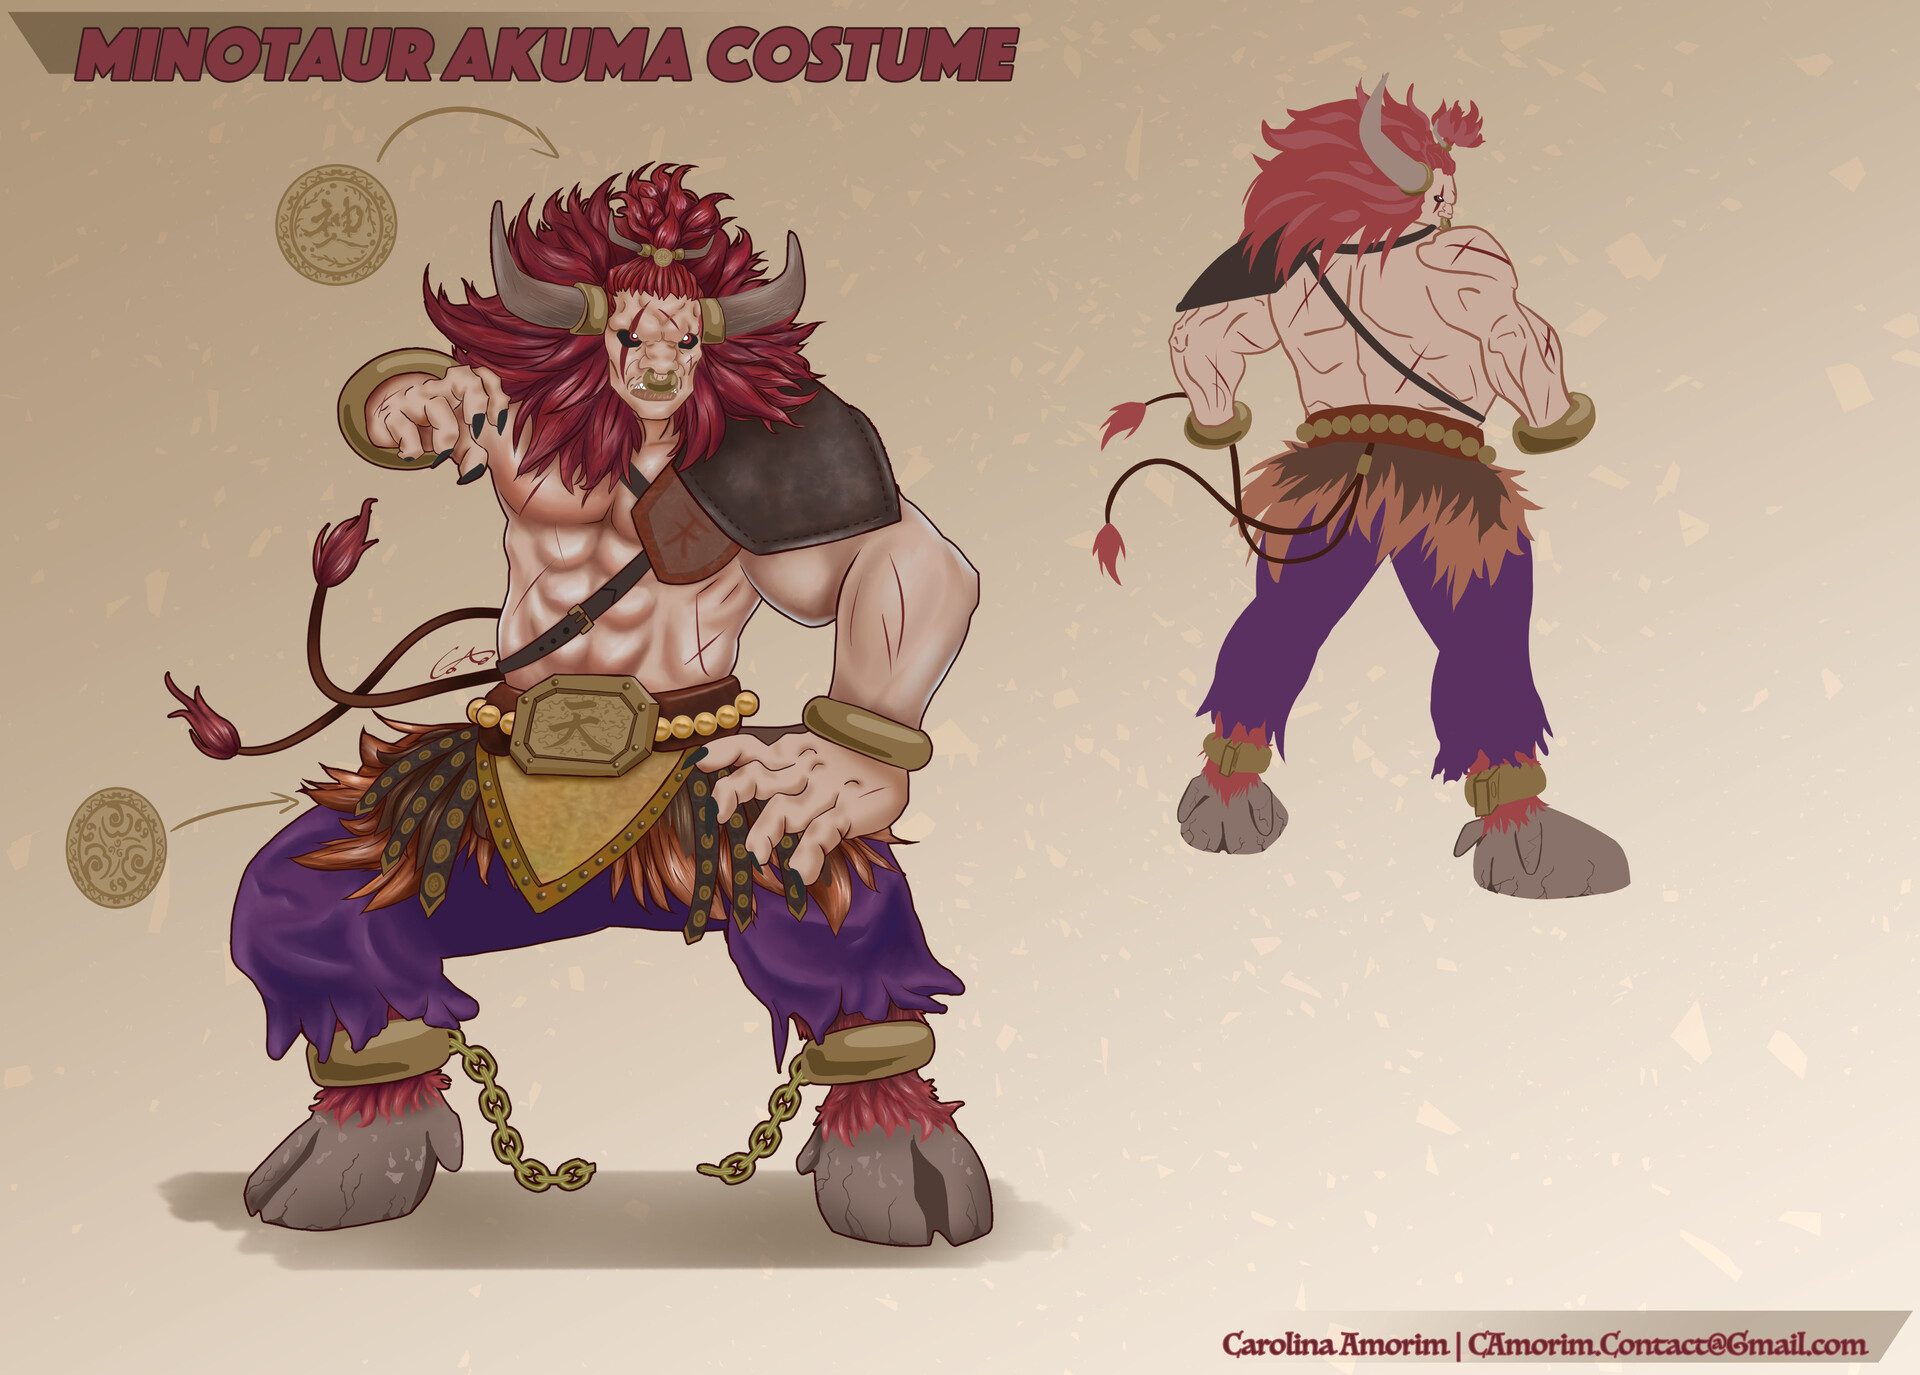 Concept artwork for Akuma's new alternative costume in Super